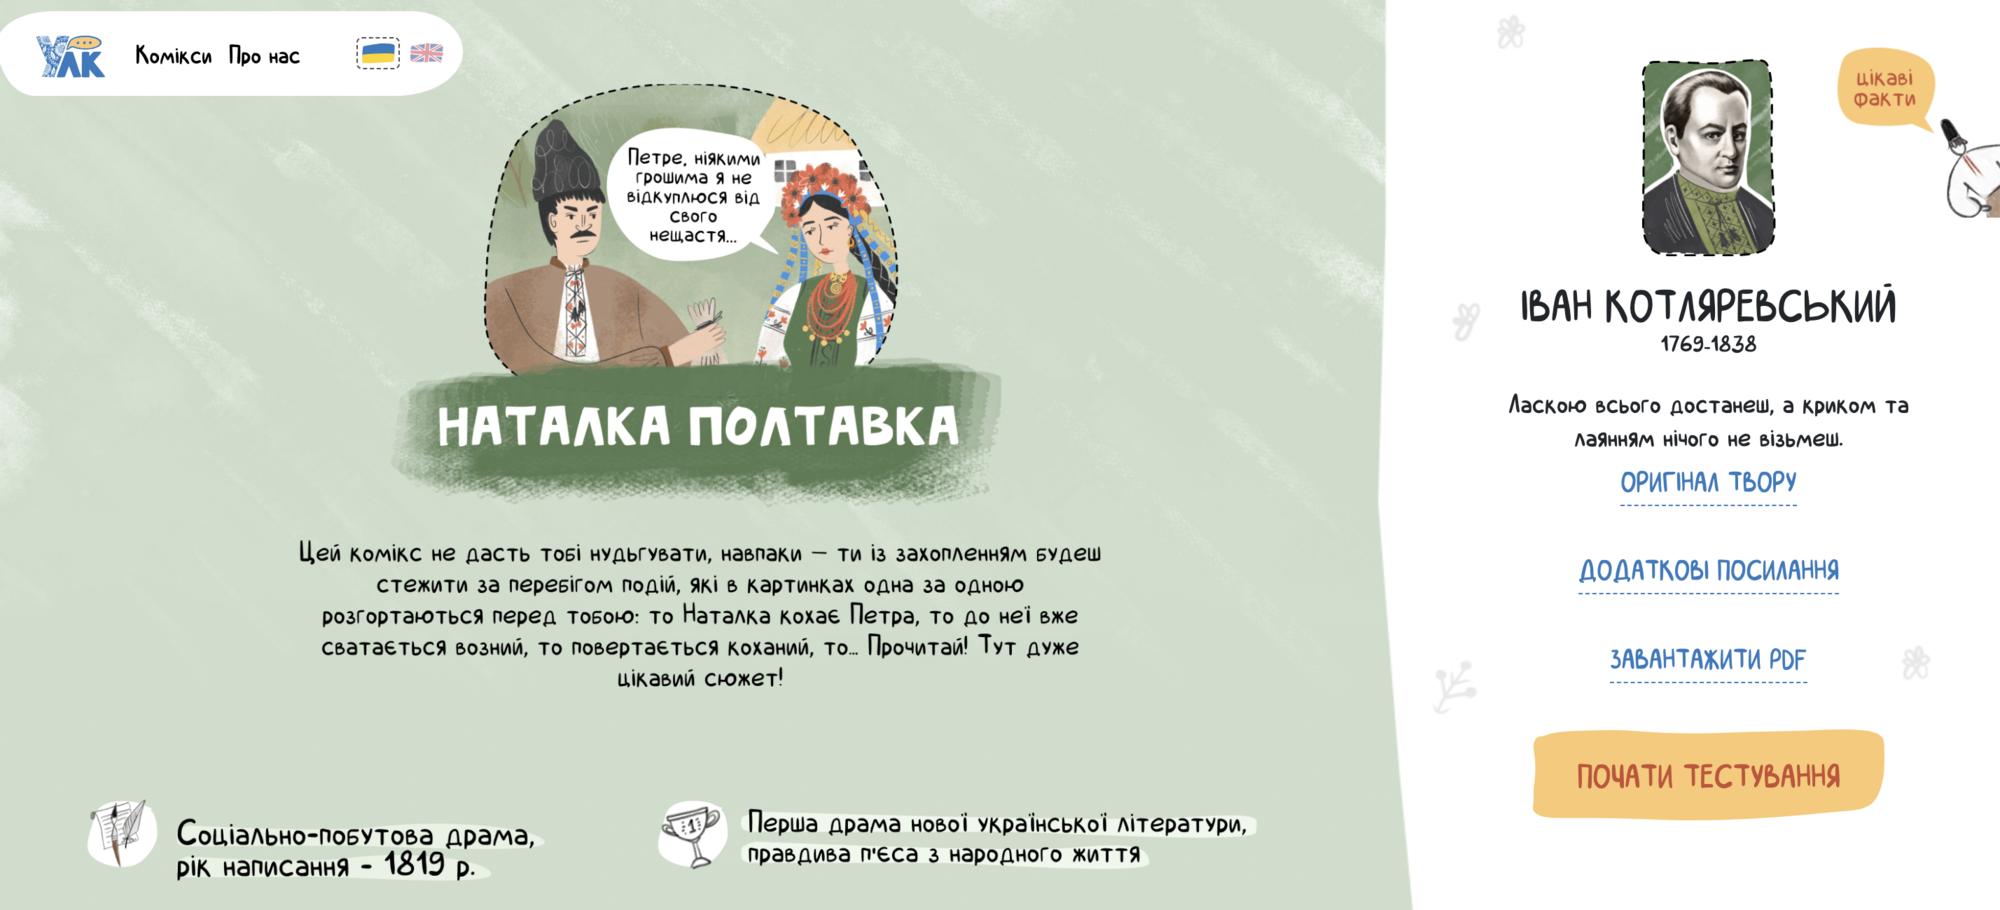 ''Наталка Полтавка'', ''Черная рада'' и другое. В Украине создали комиксы для школьников 7, 9, 10 и 11 классов